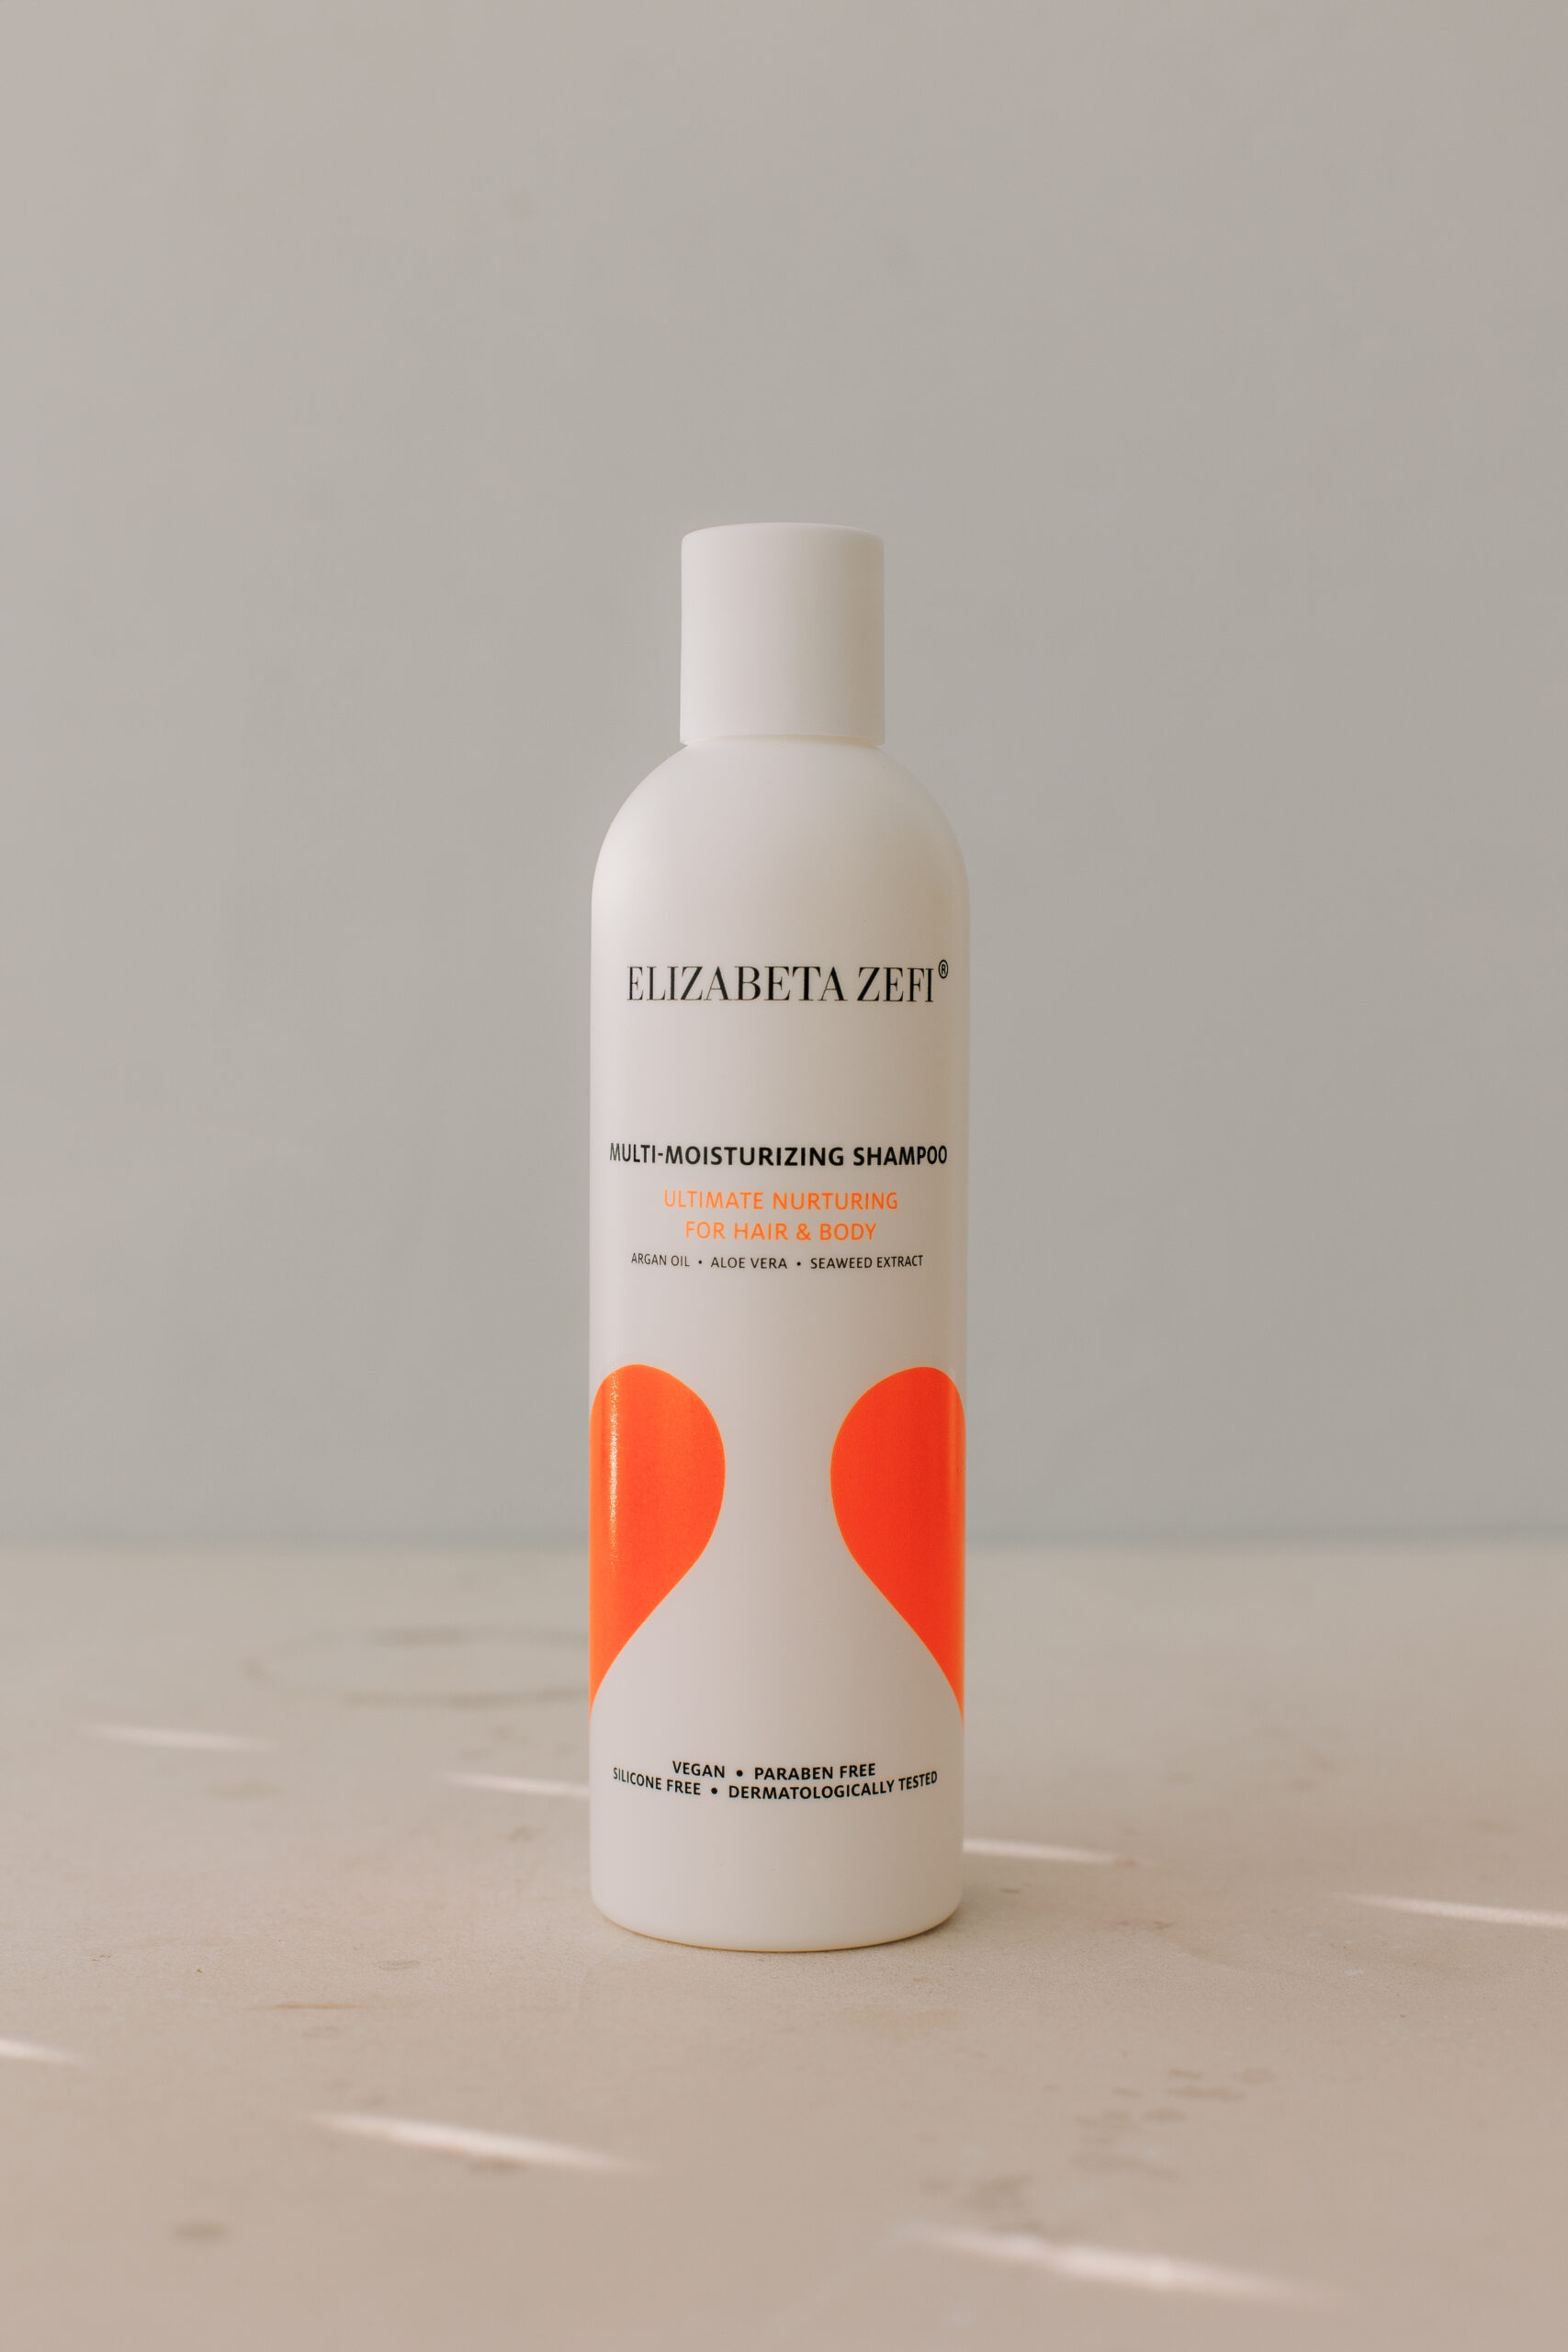 Шампунь для глубокого увлажнения волос и тела Elizabeta Zefi Multi-Moisturizing Shampoo 250ml